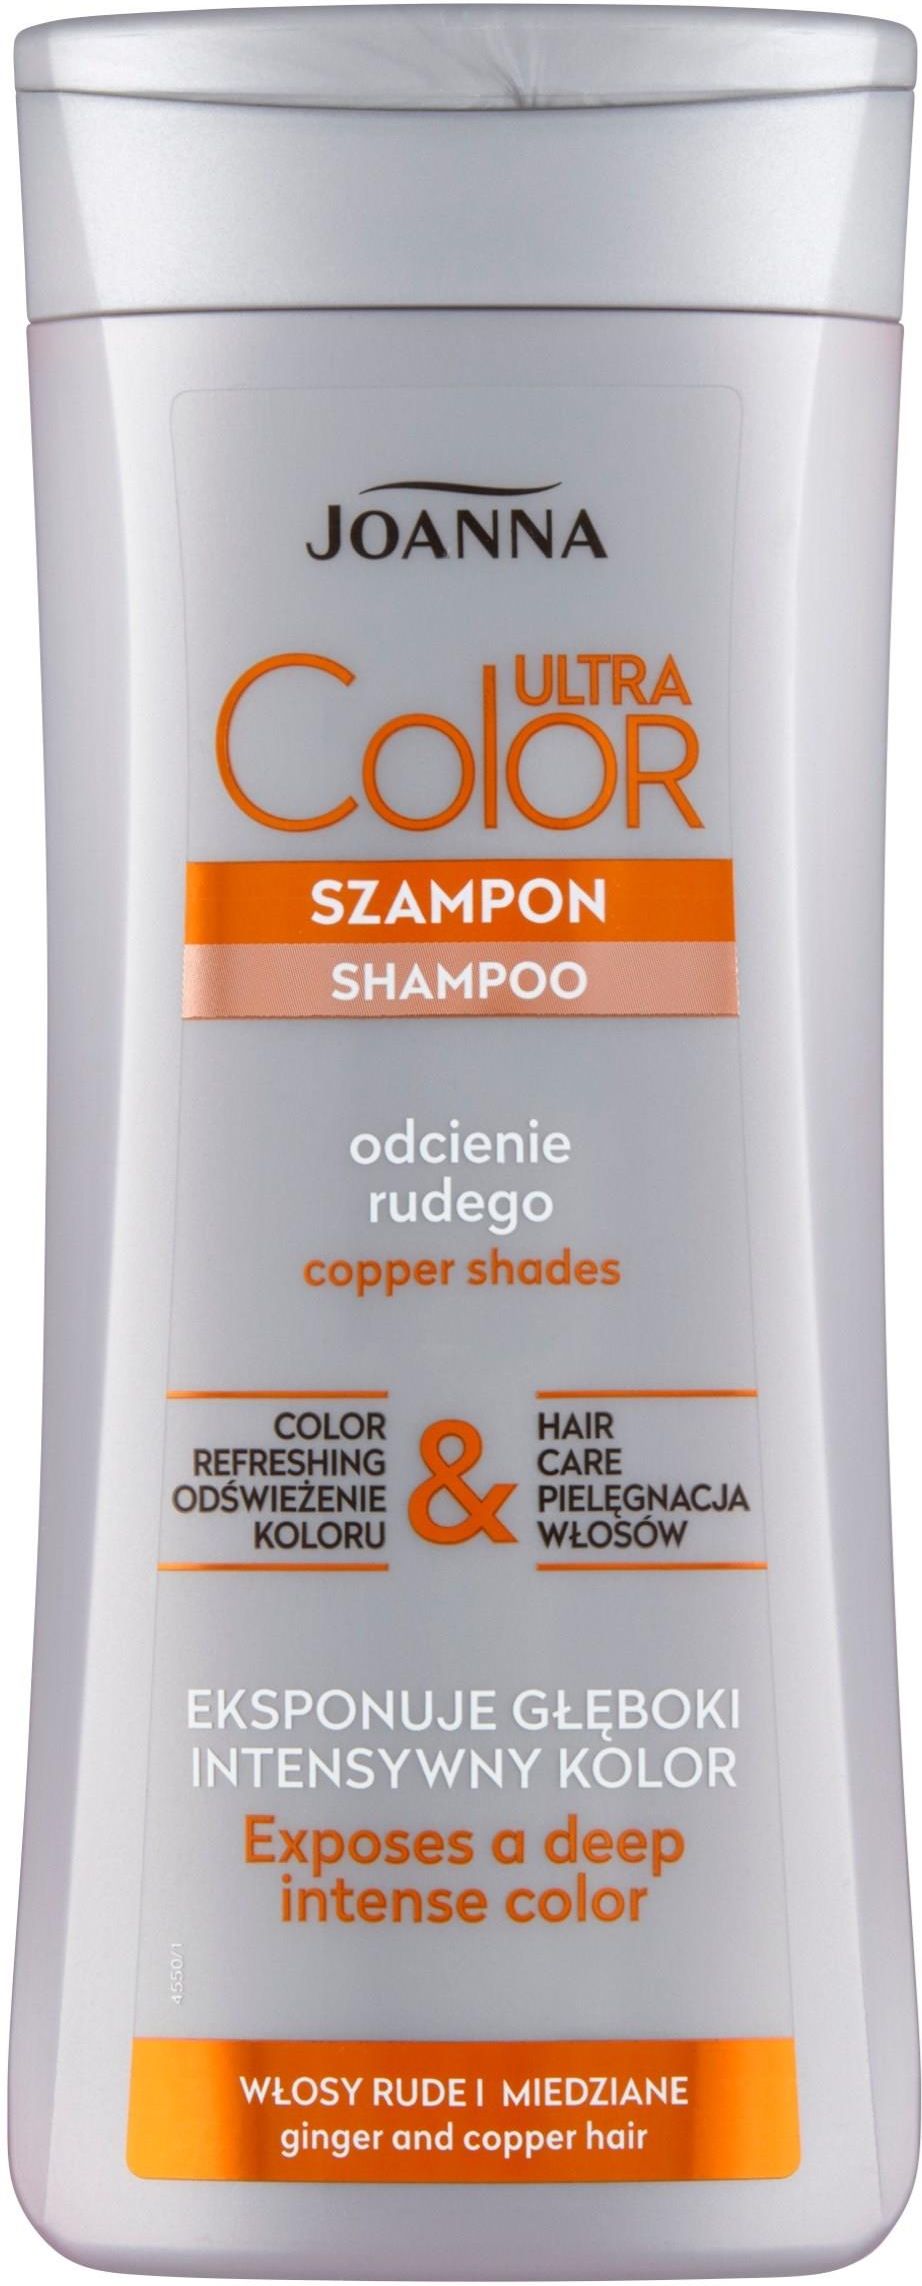 szampon joanna color do rudych